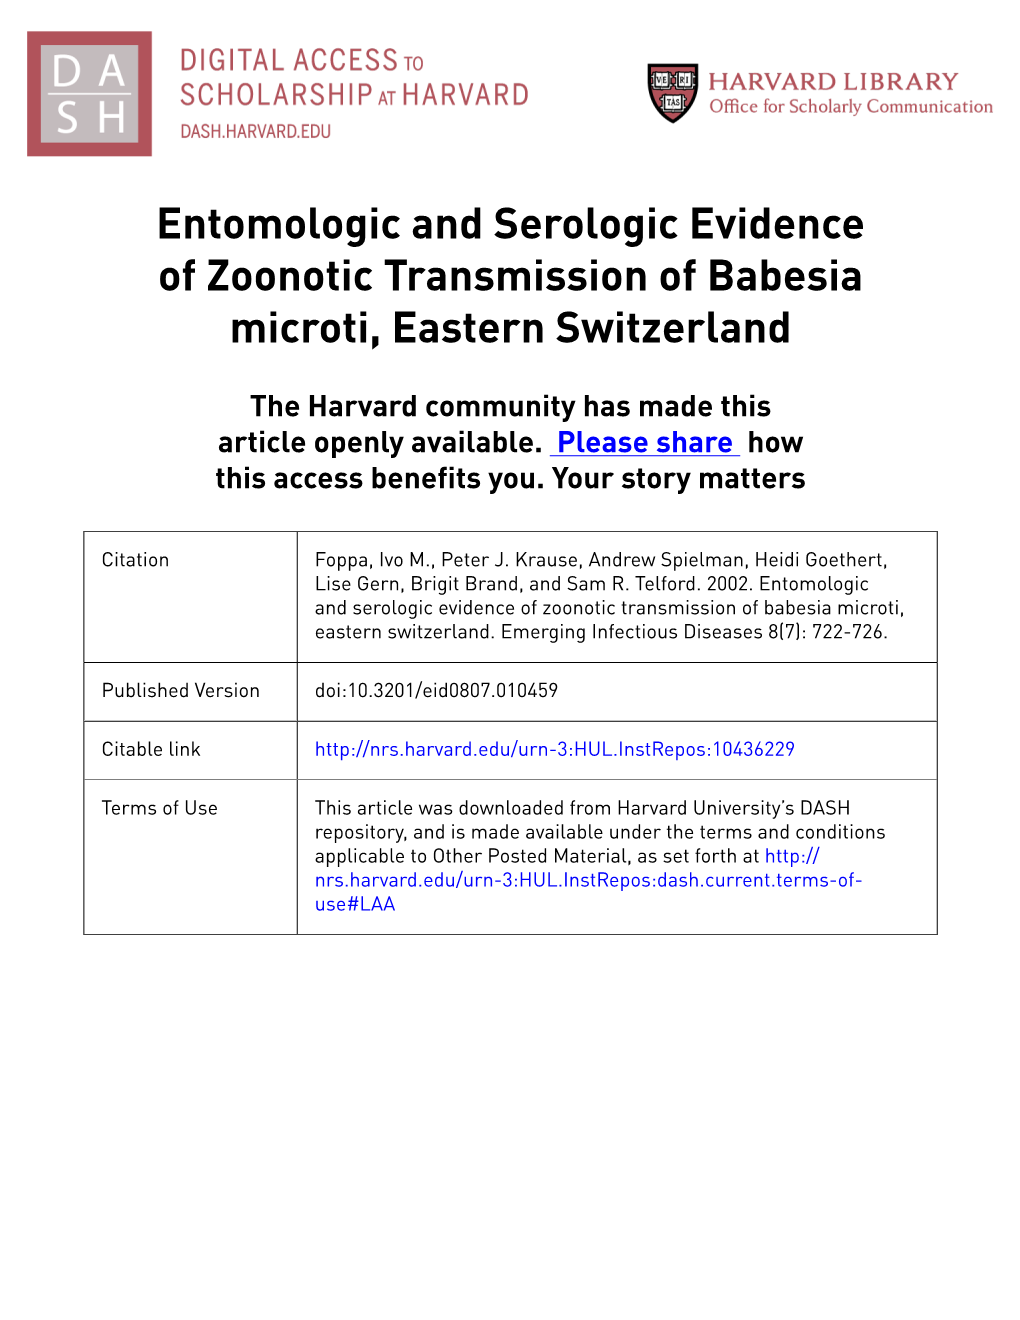 Entomologic and Serologic Evidence of Zoonotic Transmission of Babesia Microti, Eastern Switzerland